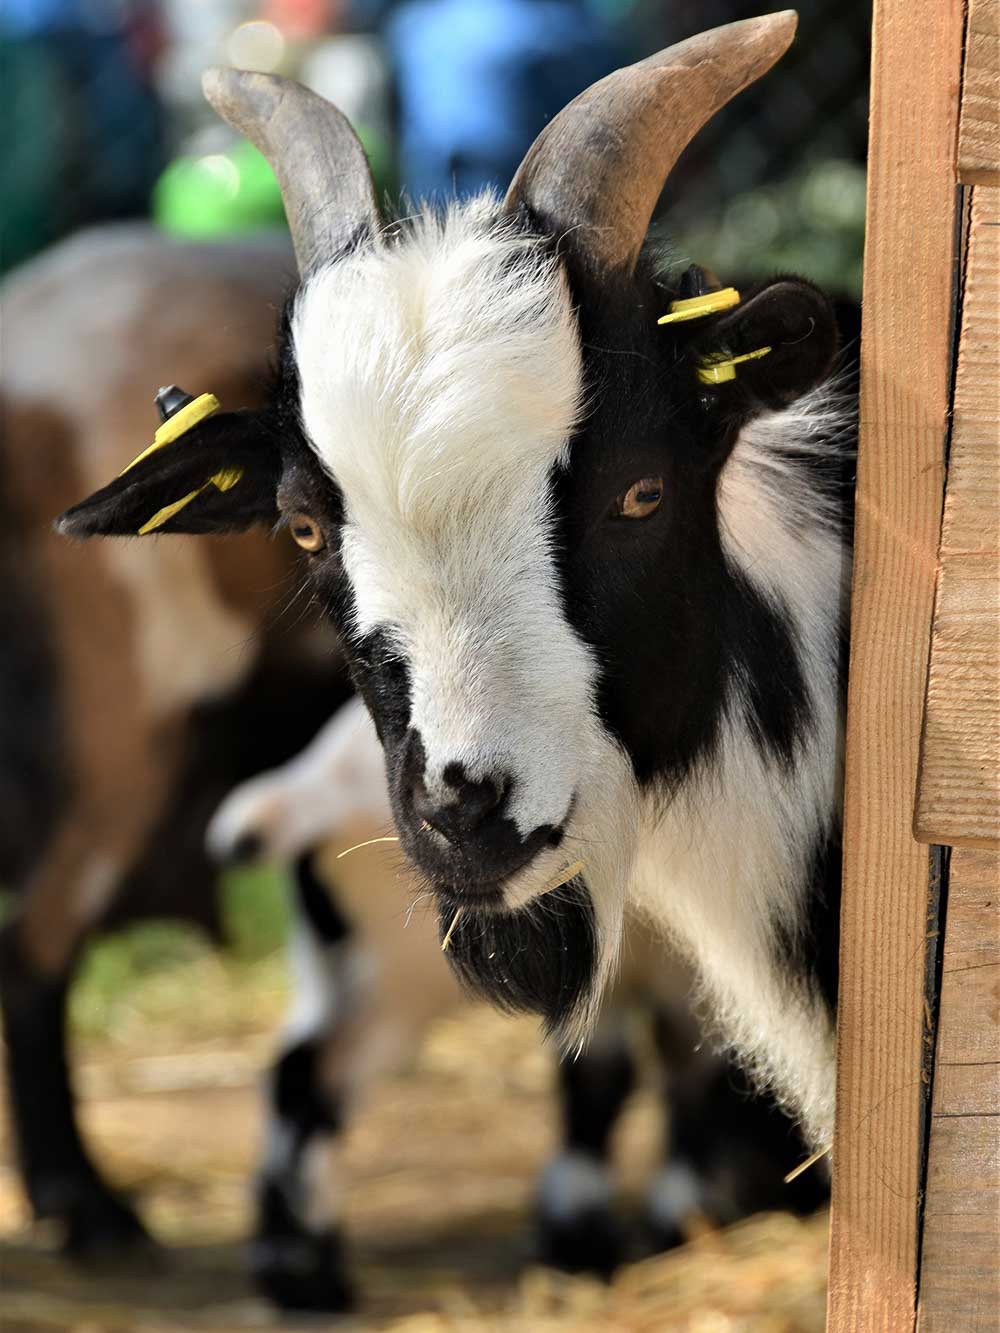 Dwarf goats enclosure